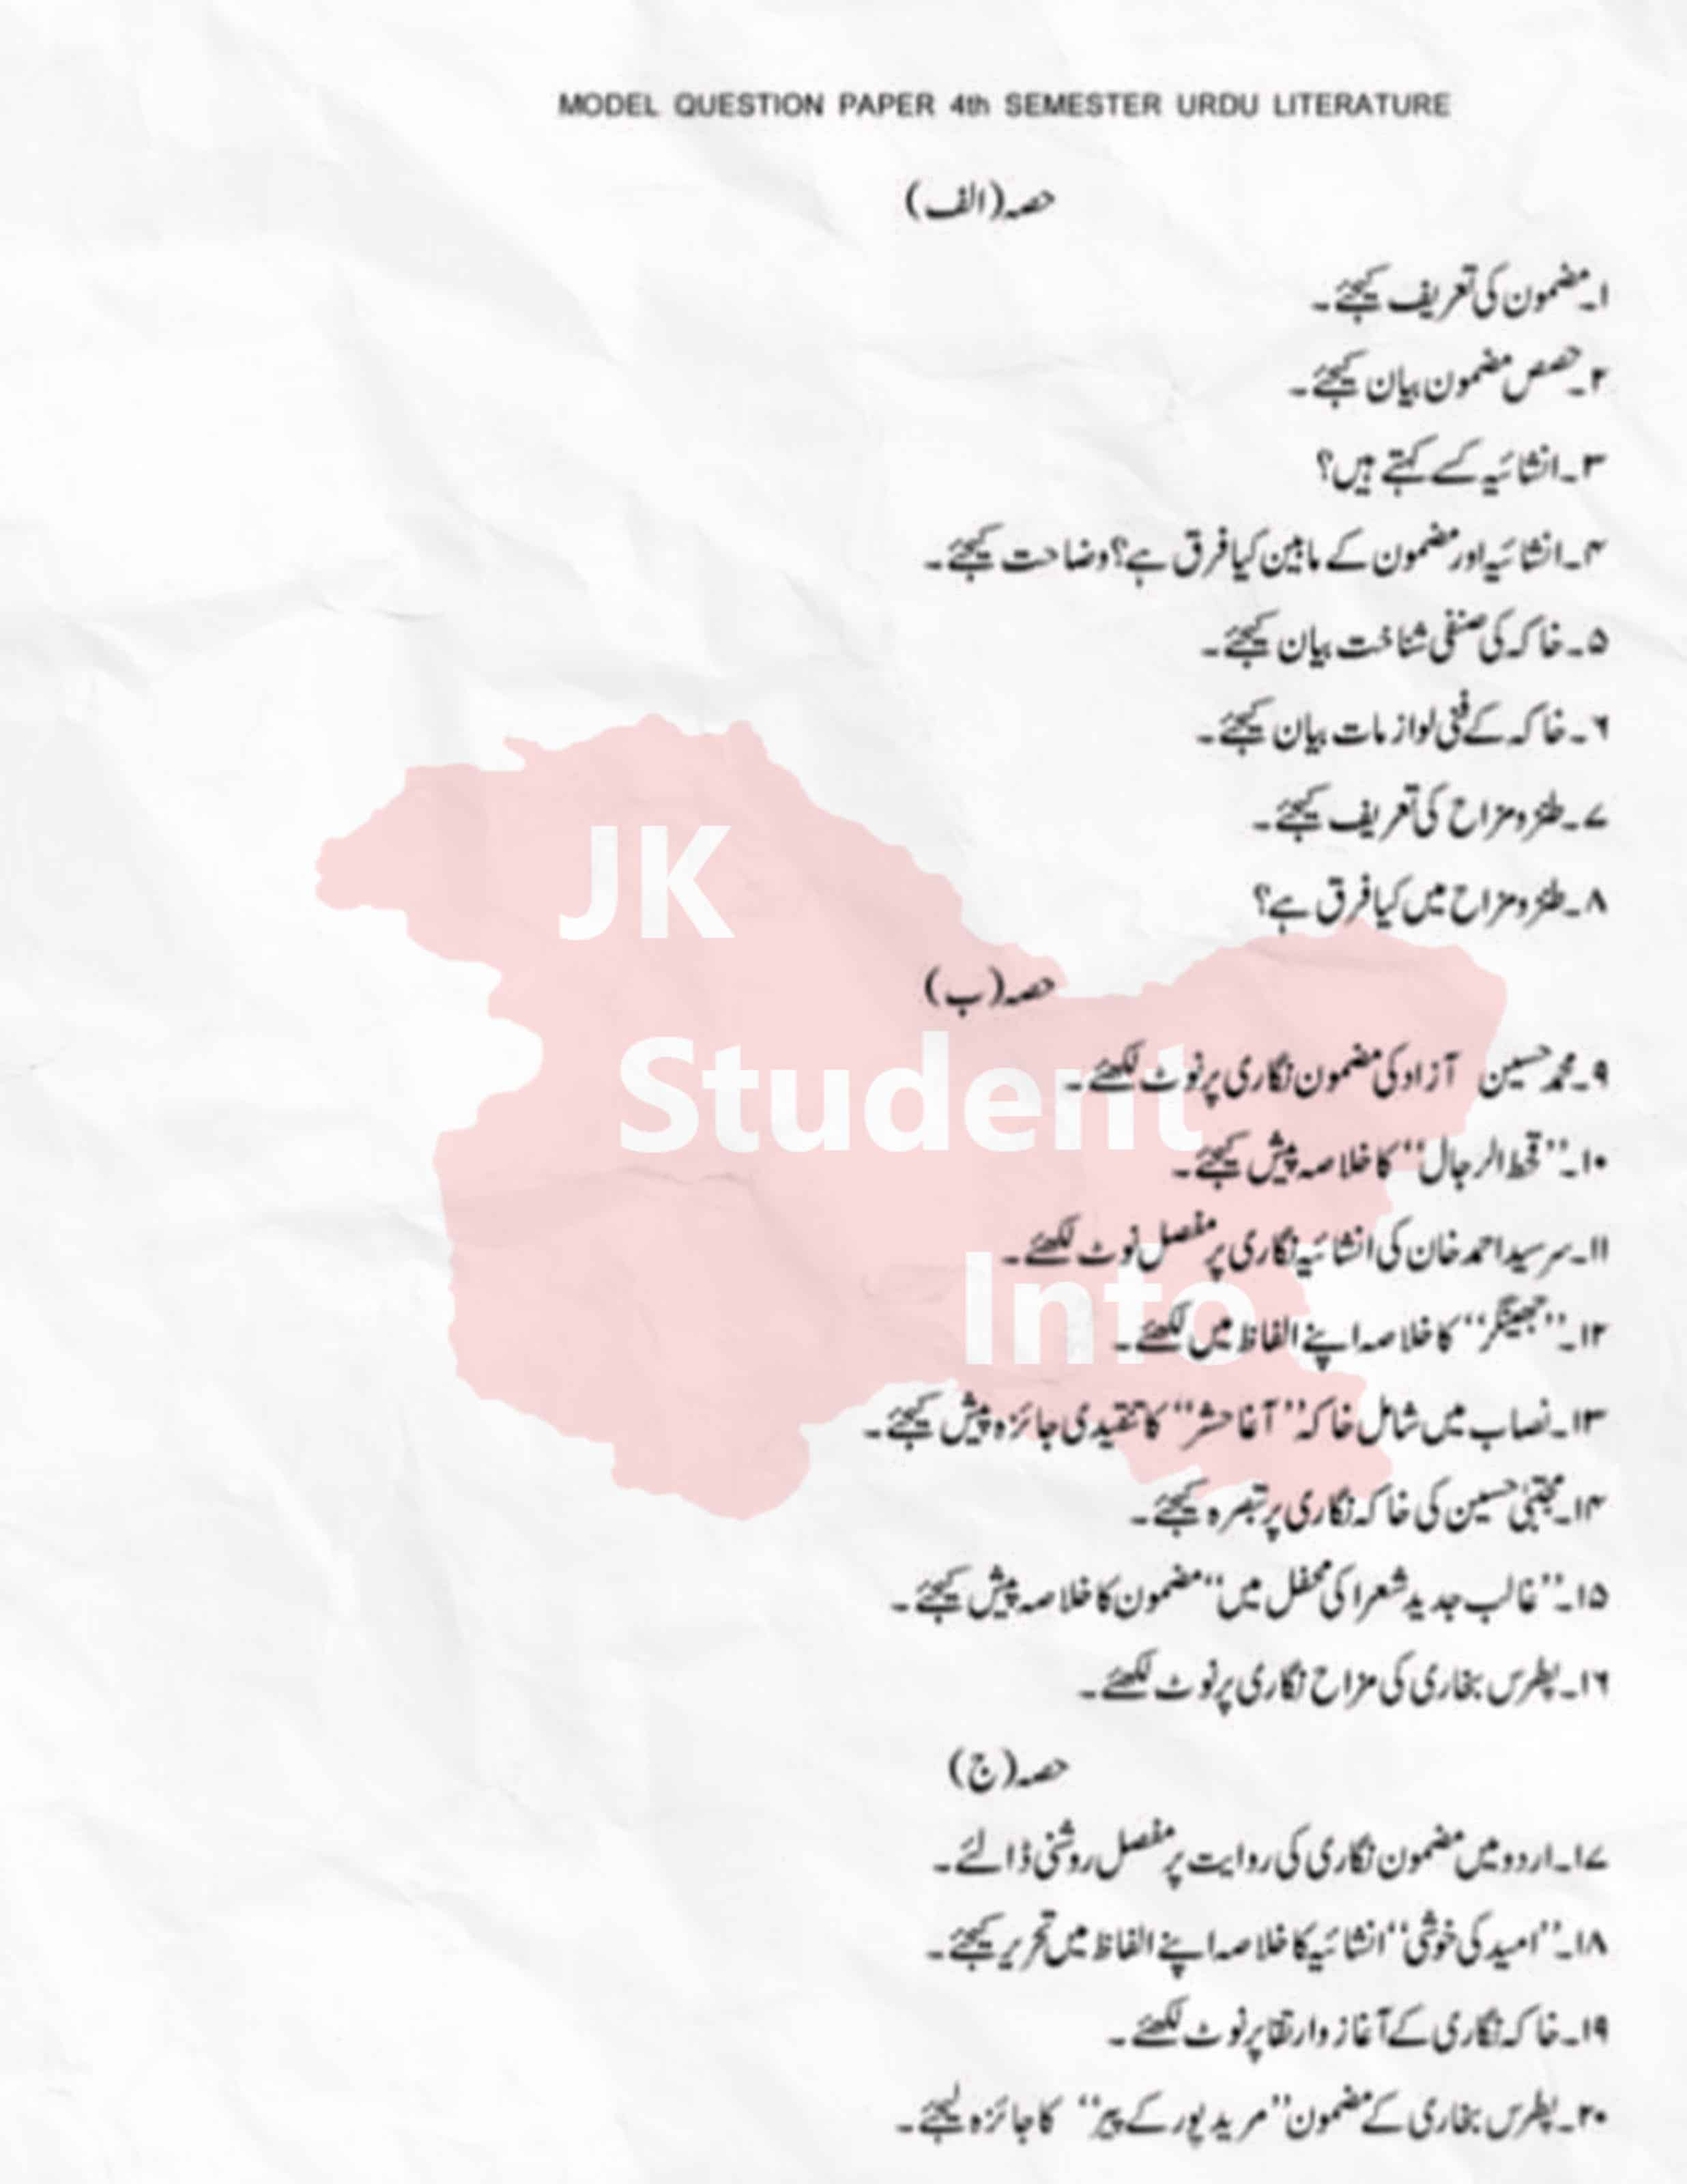 4th Sem Urdu literature Model Paper